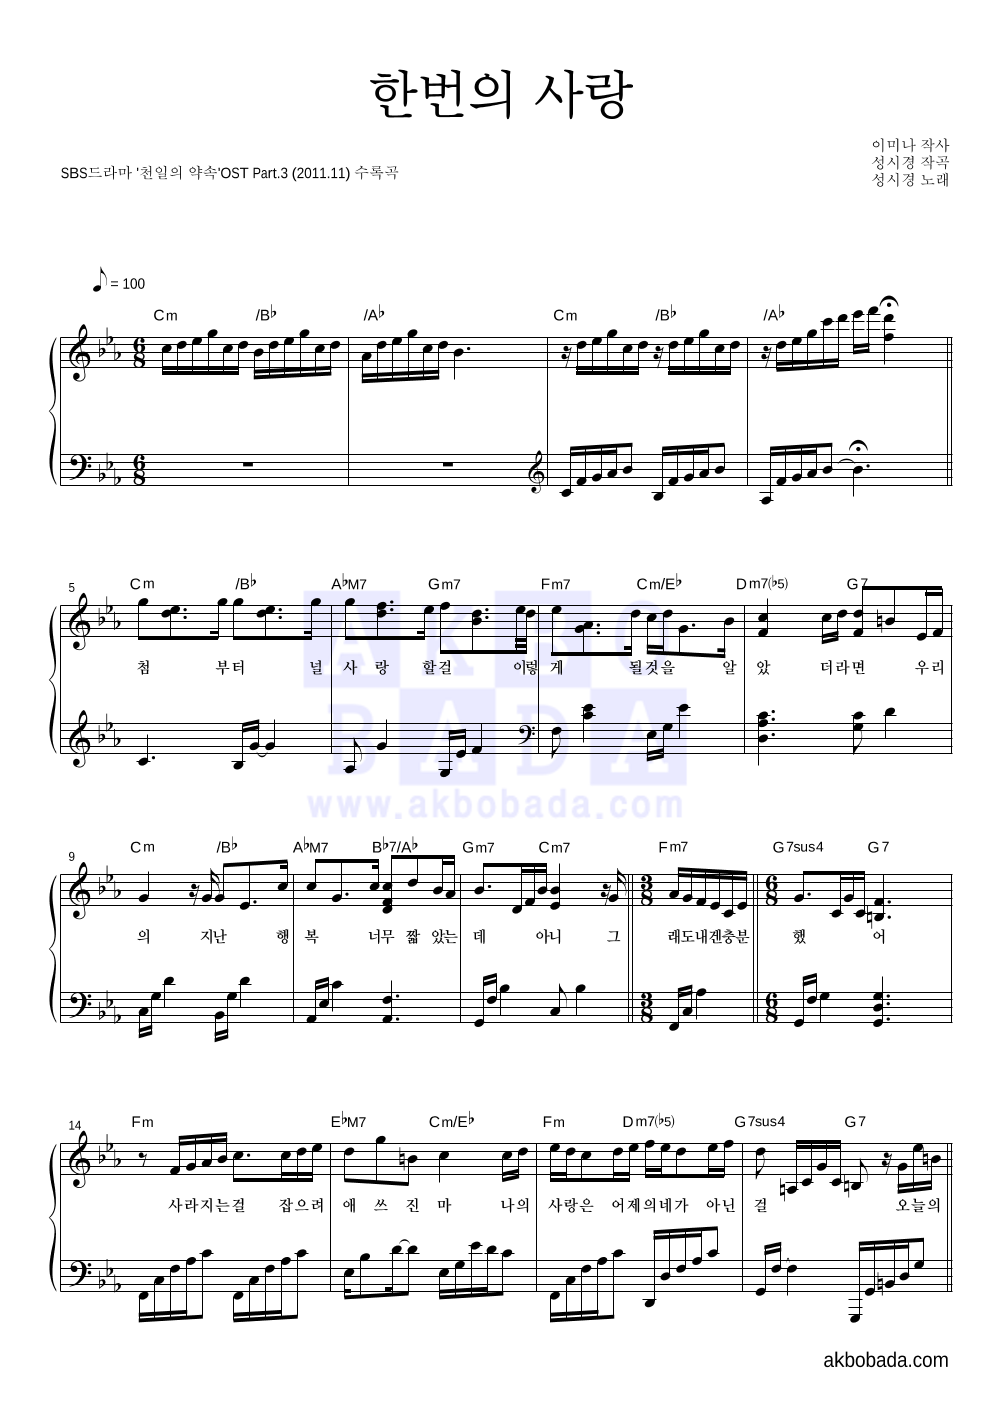 성시경 - 한번의 사랑 피아노 2단 악보 